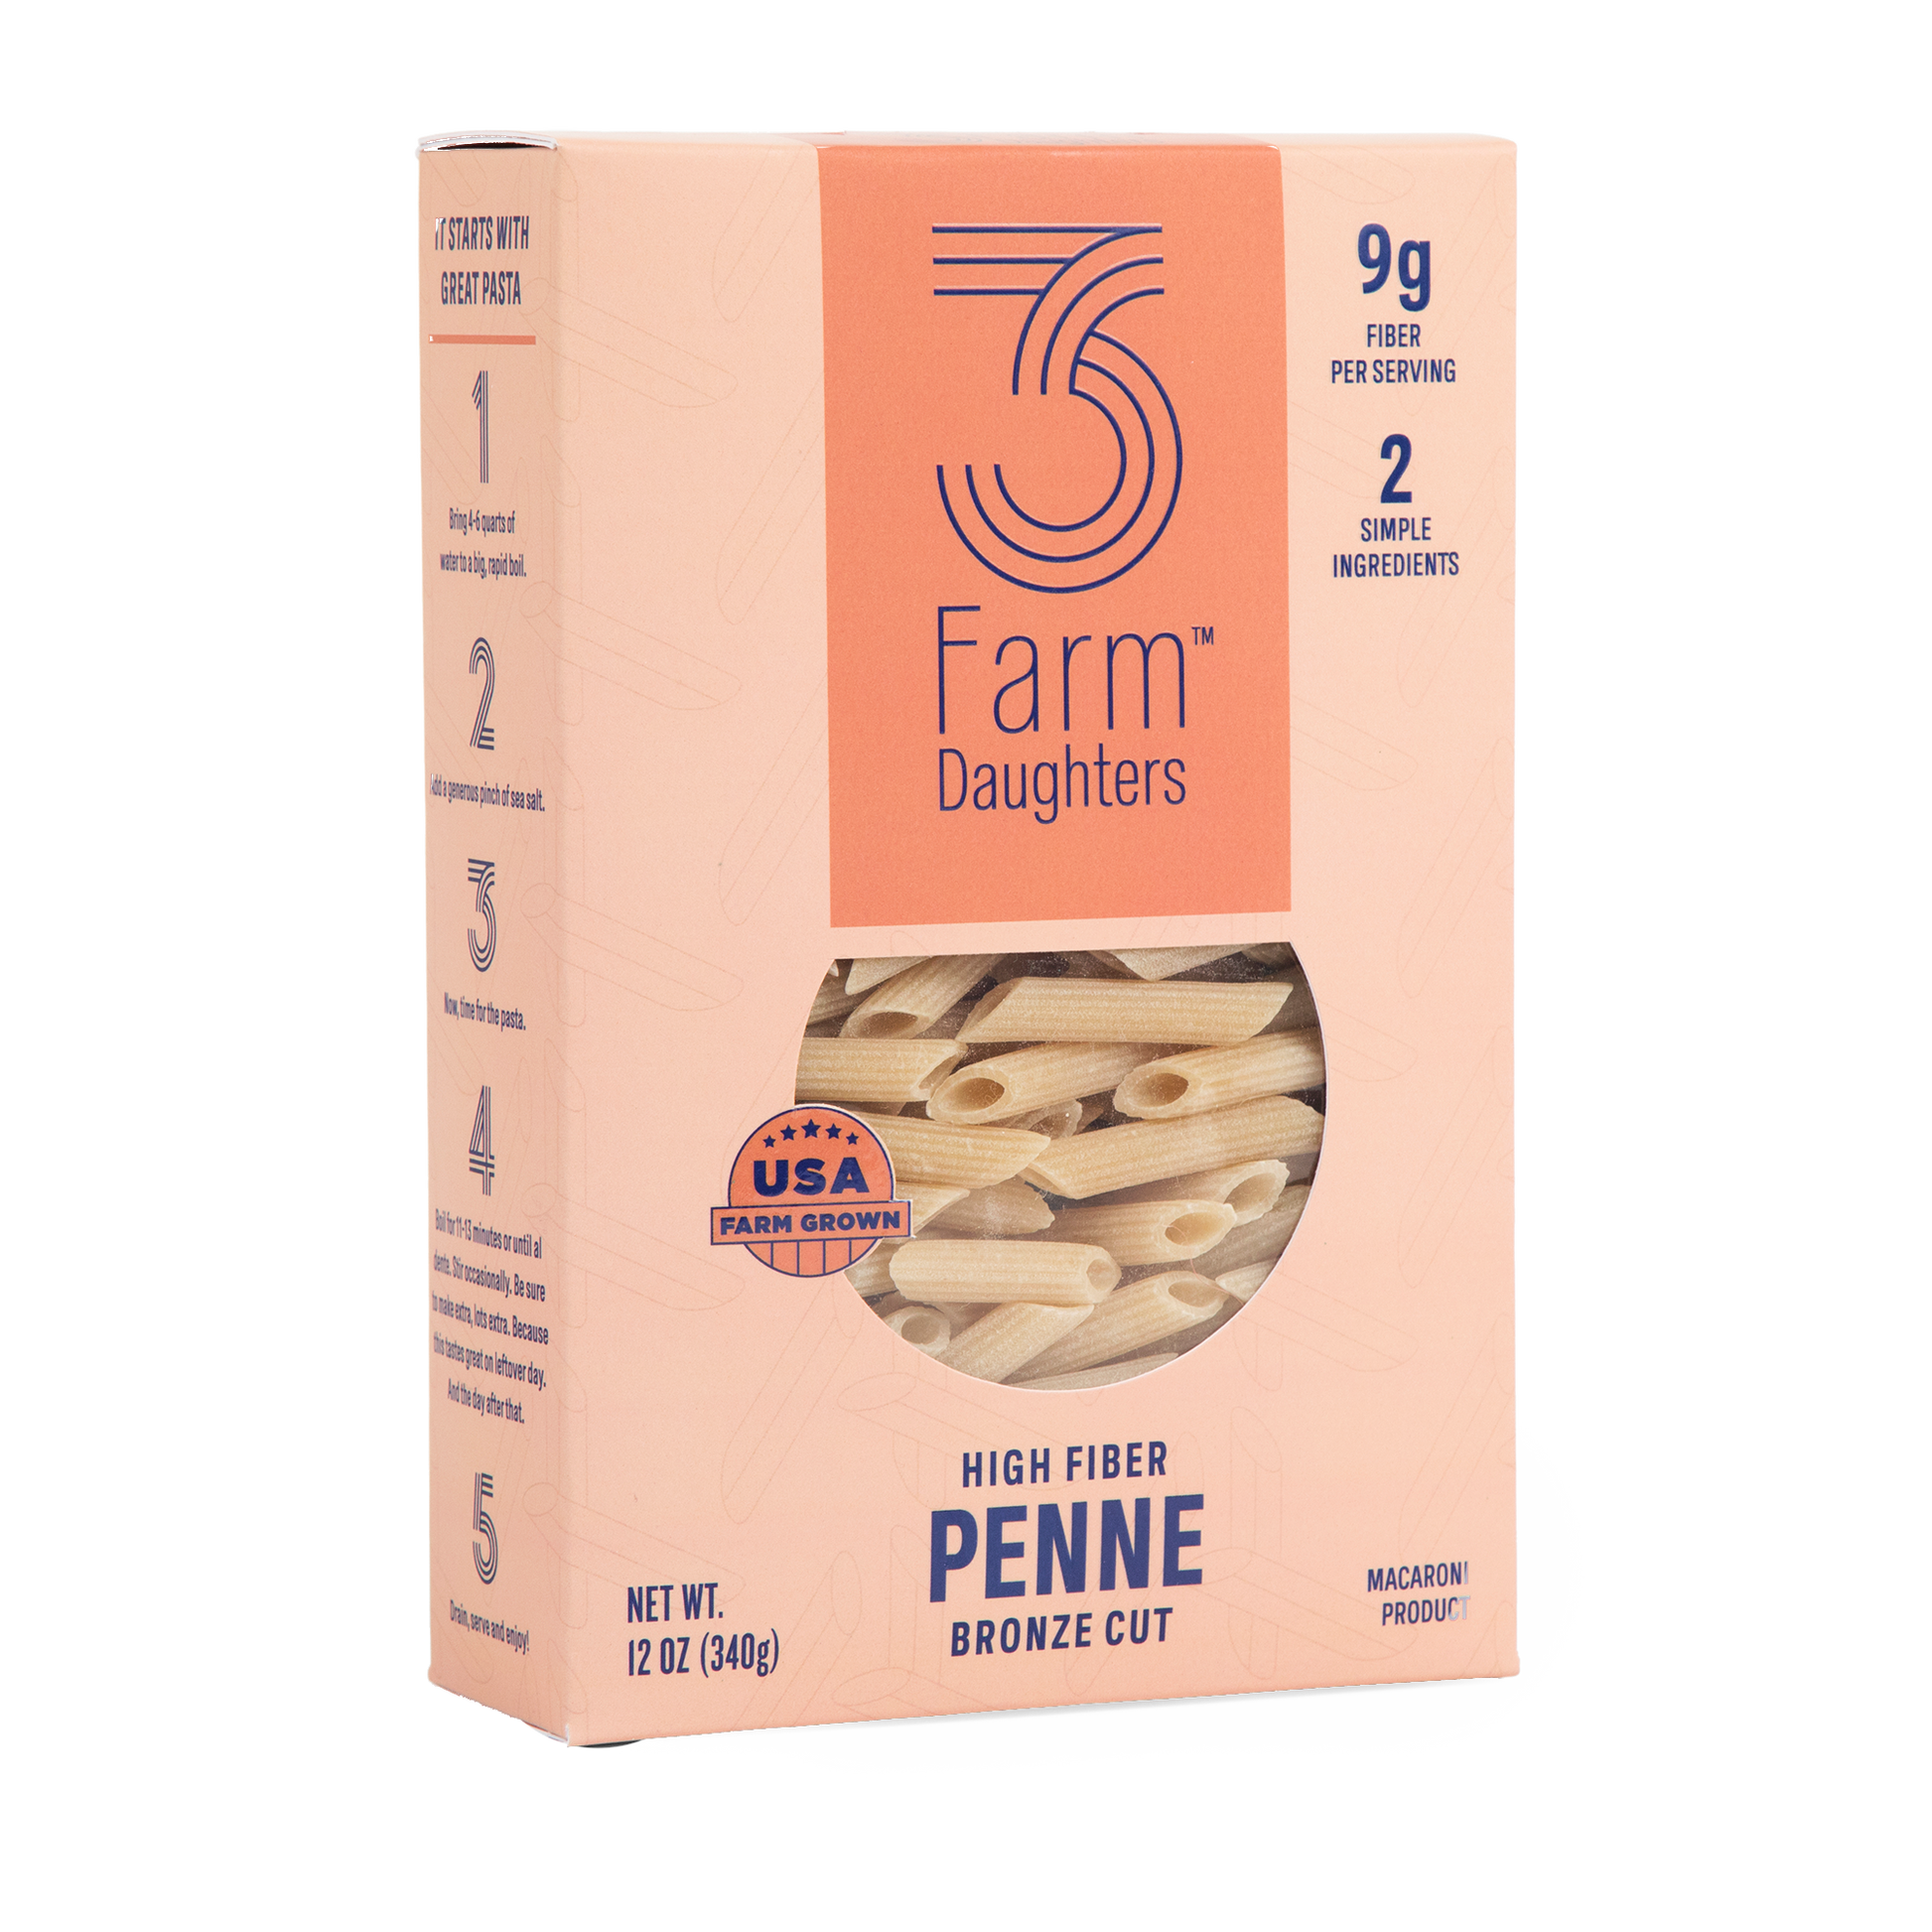 Premium, Healthy penne noodles